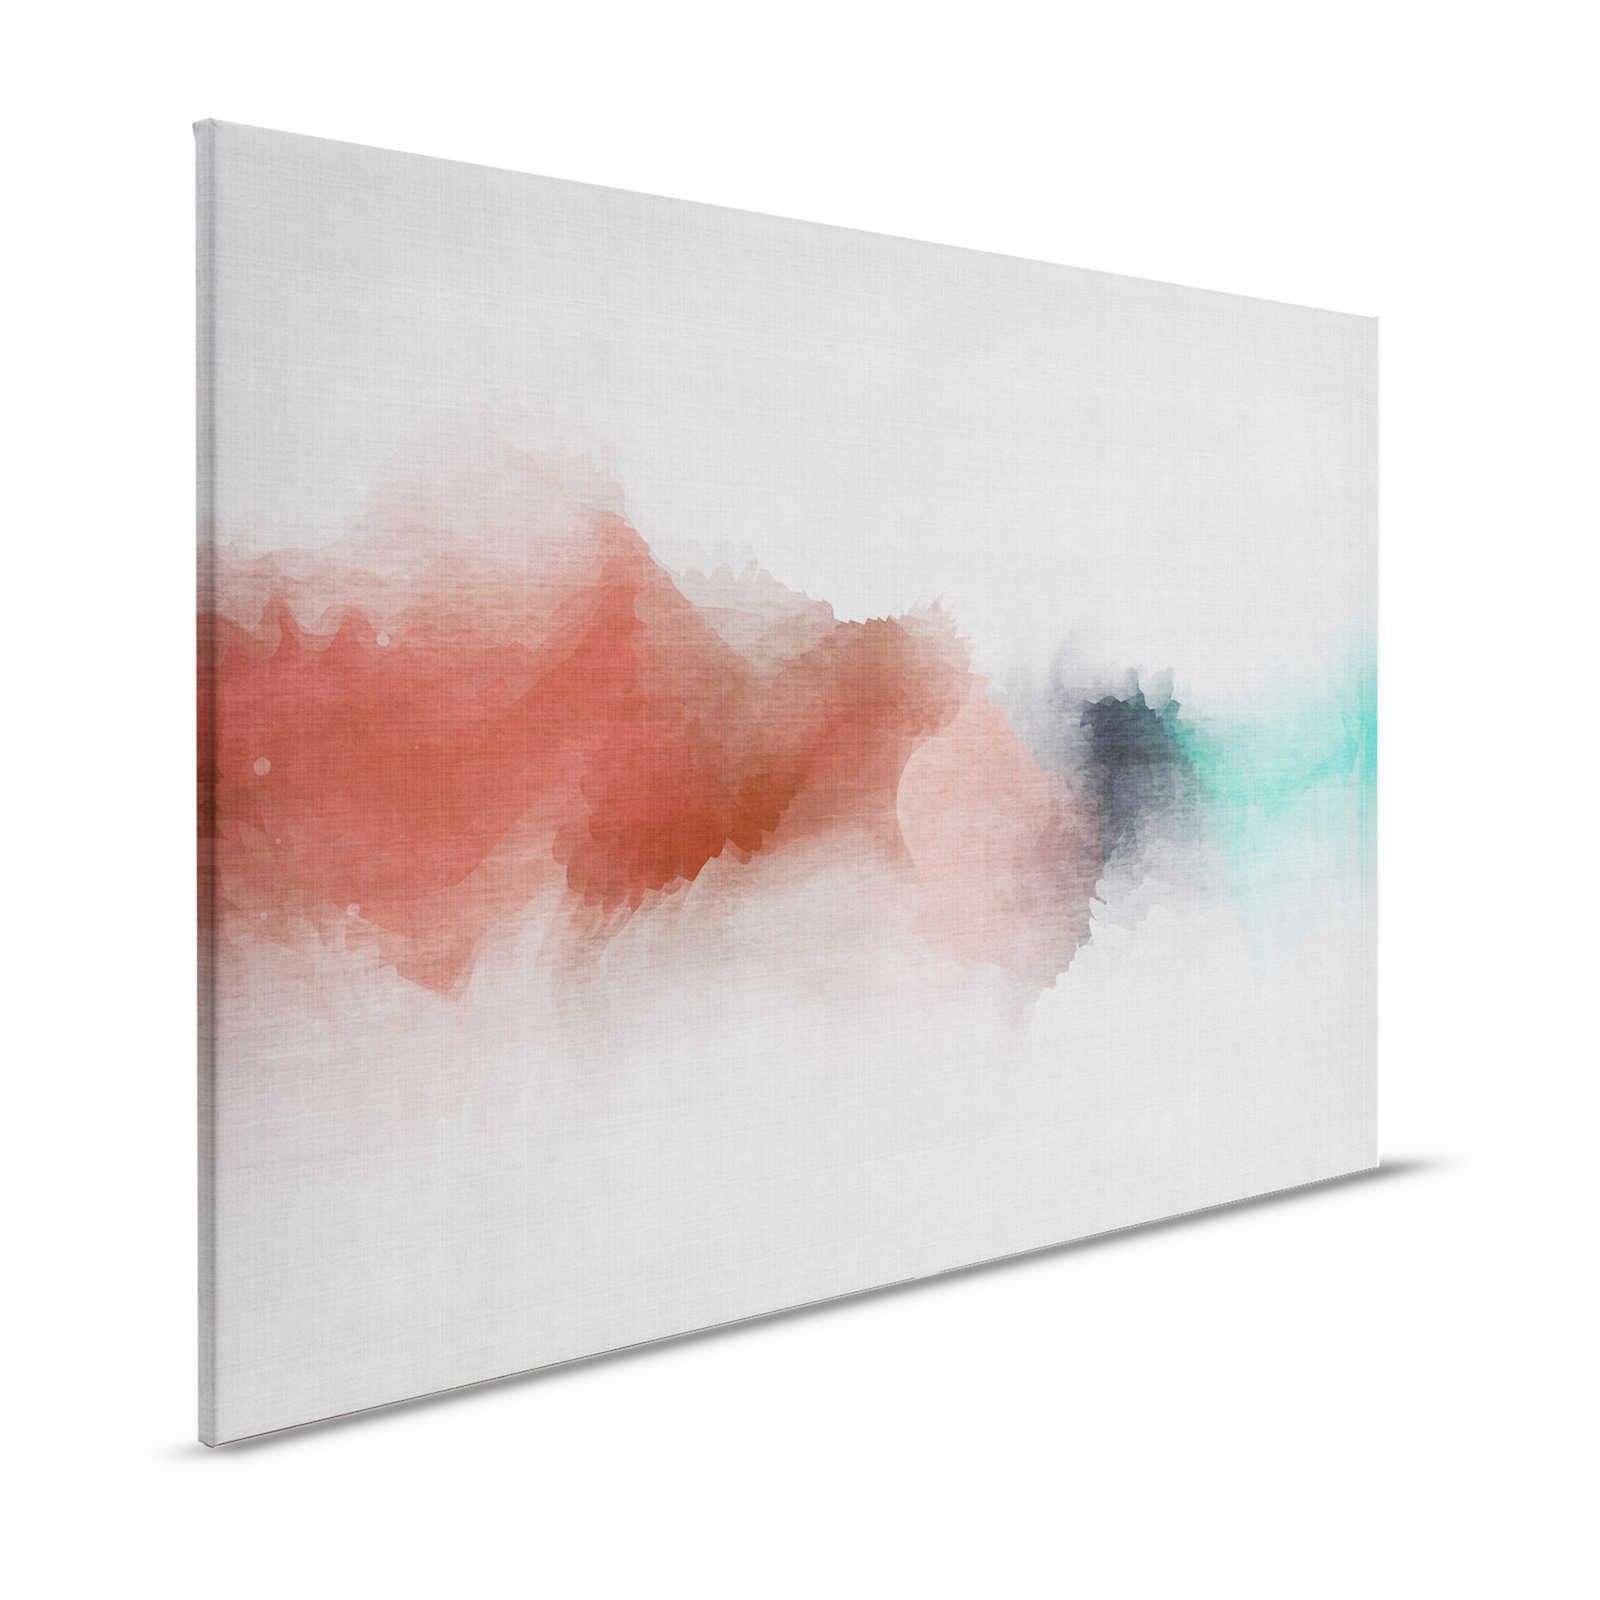 Sogno ad occhi aperti 2 - Quadro su tela in lino naturale con macchie di colore in stile acquerello - 1,20 m x 0,80 m
